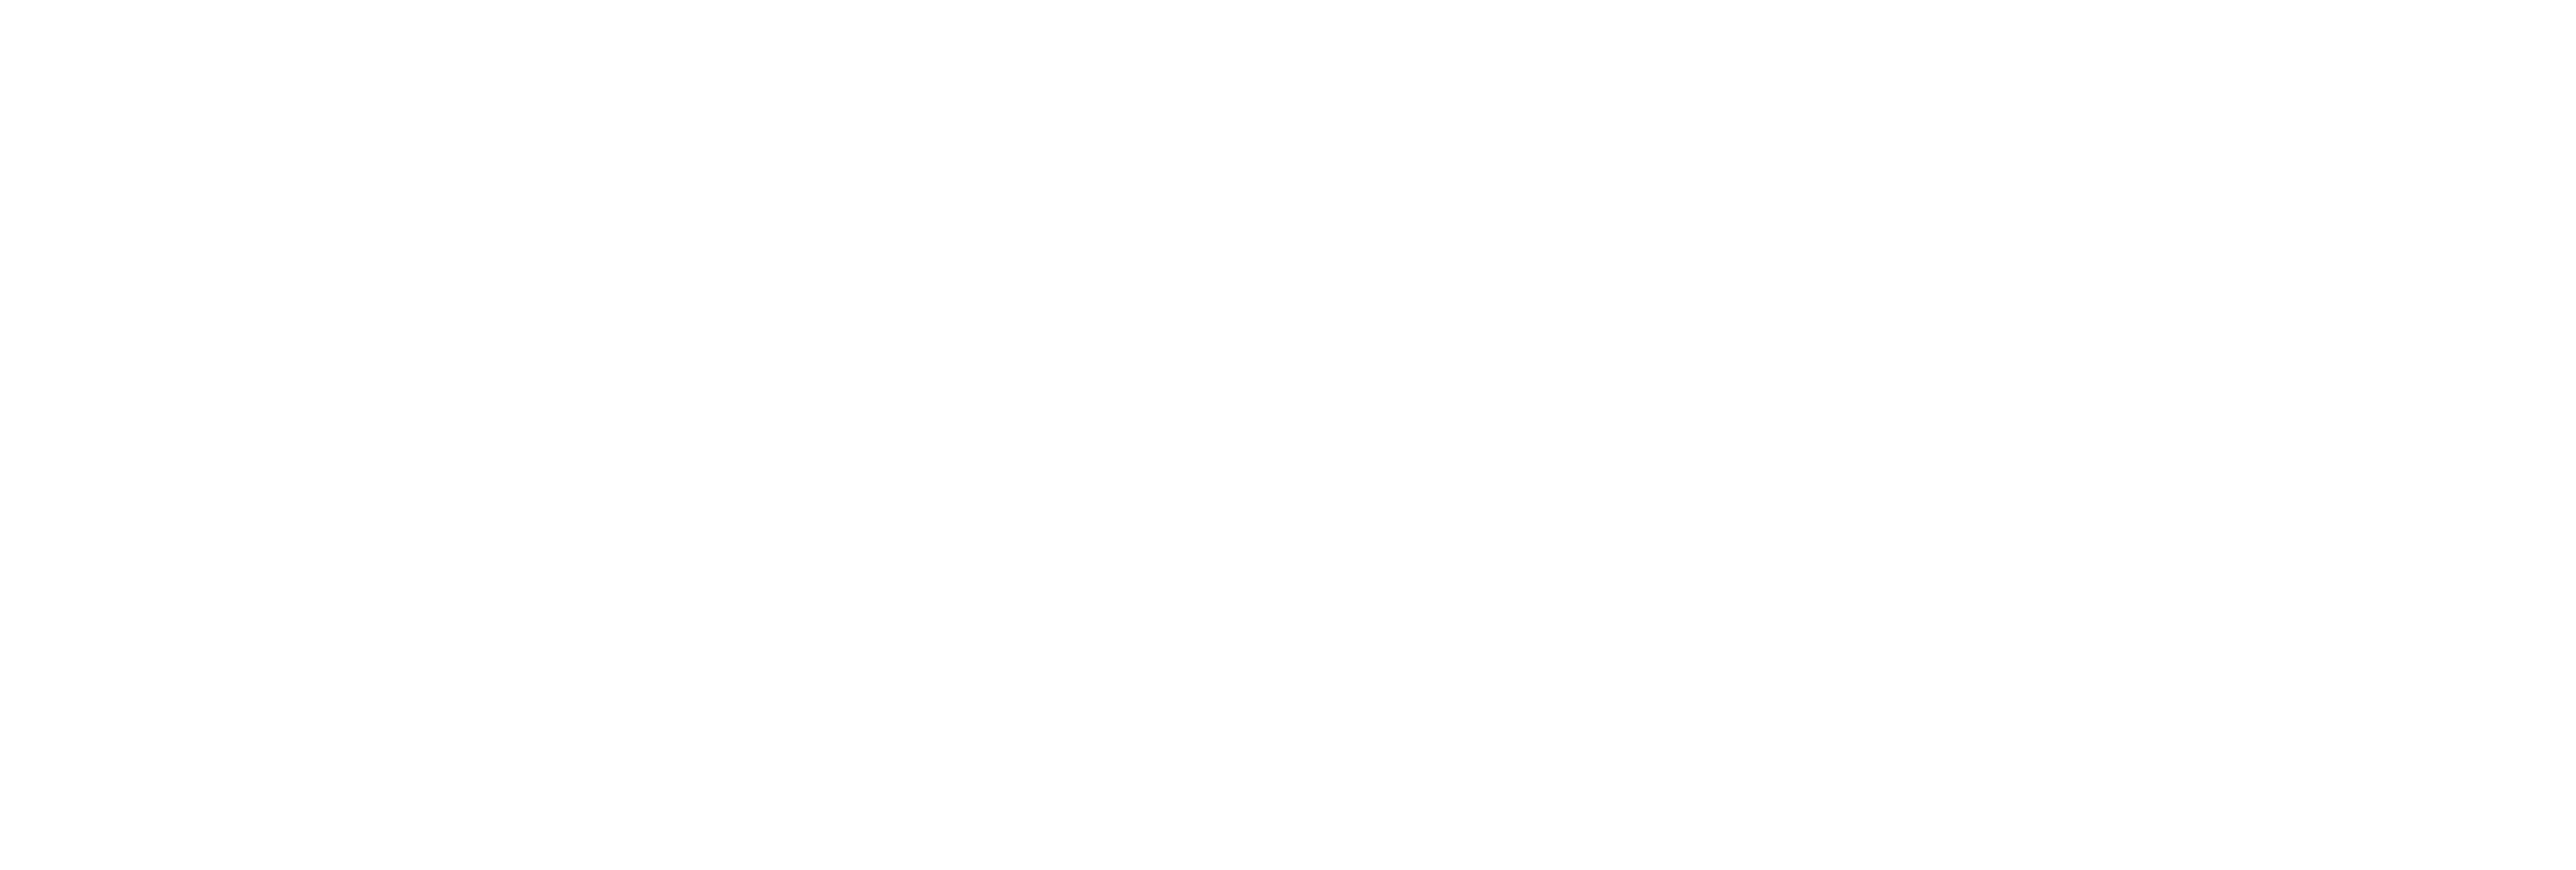 AniCura Køge Dyrehospital logo